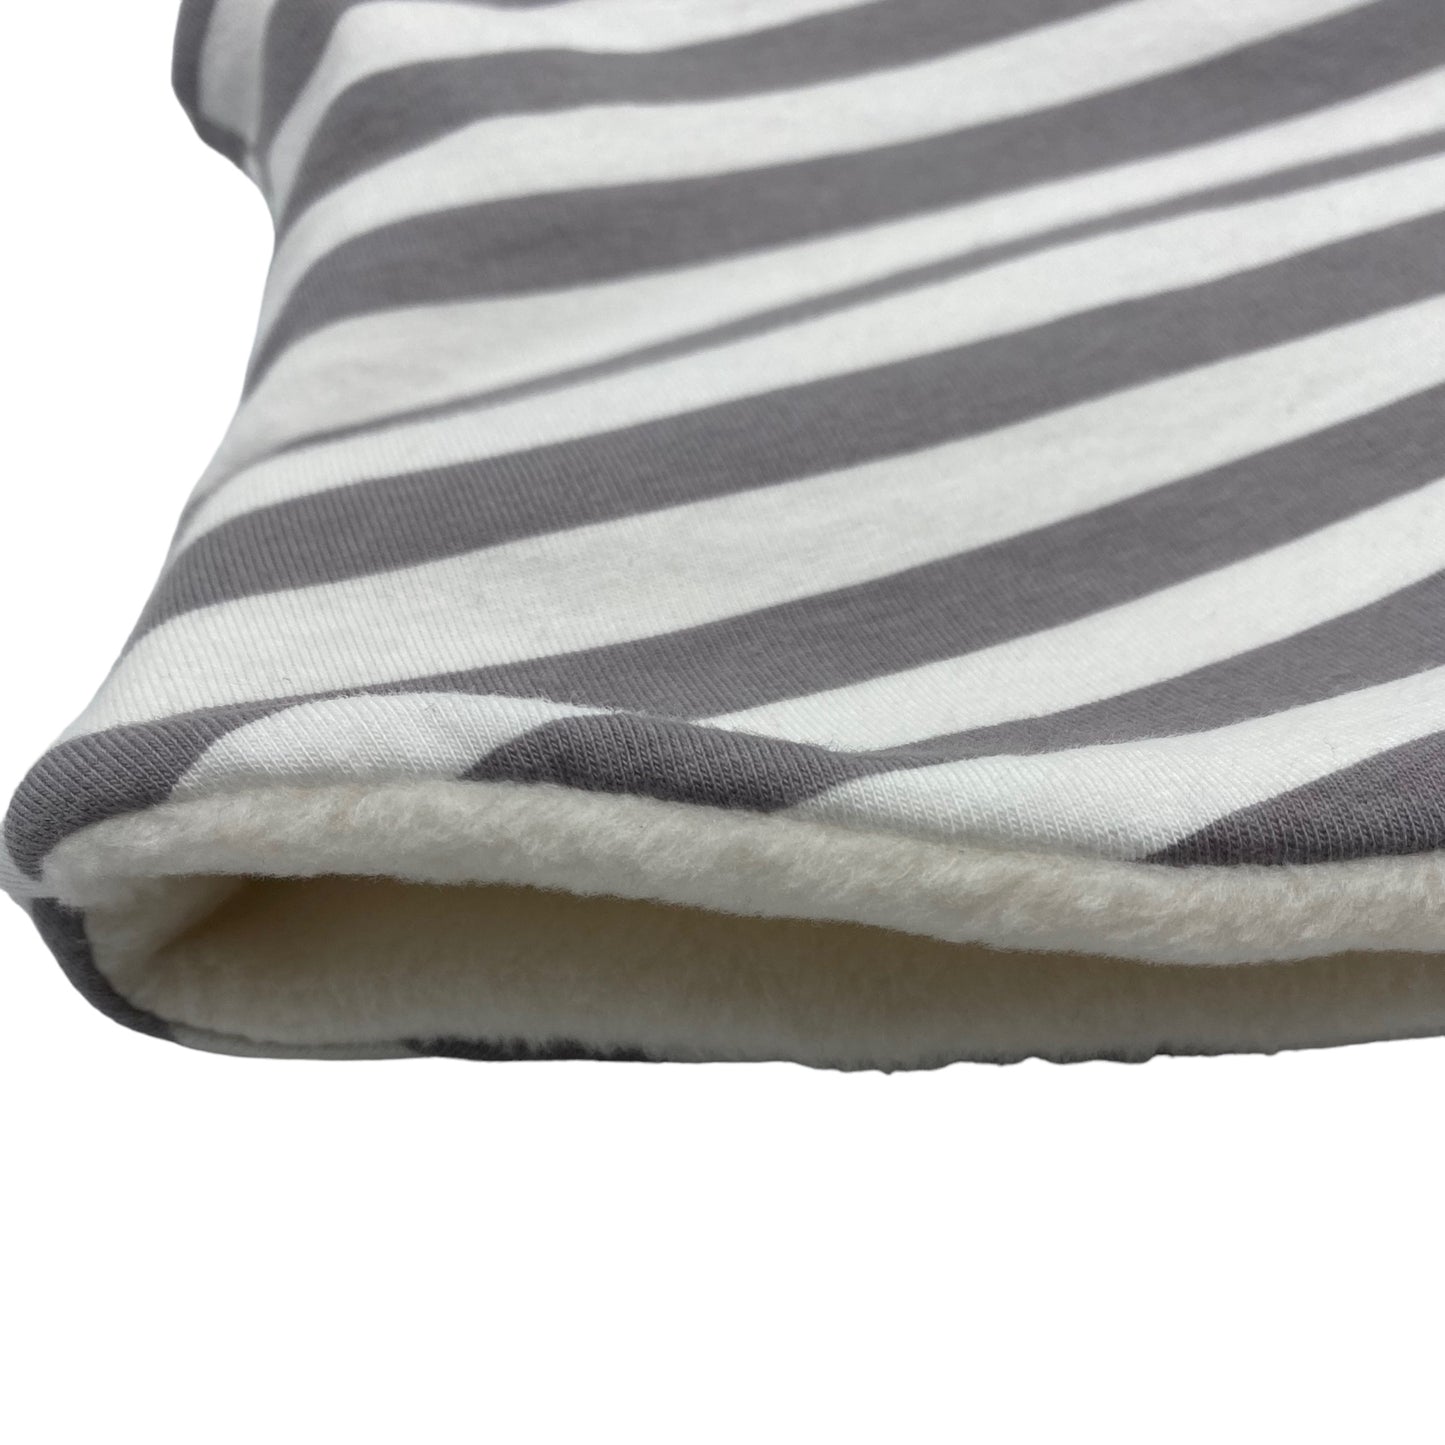 Adult Handmade Neck Warmer Stripes Gray White (multiple liner options)